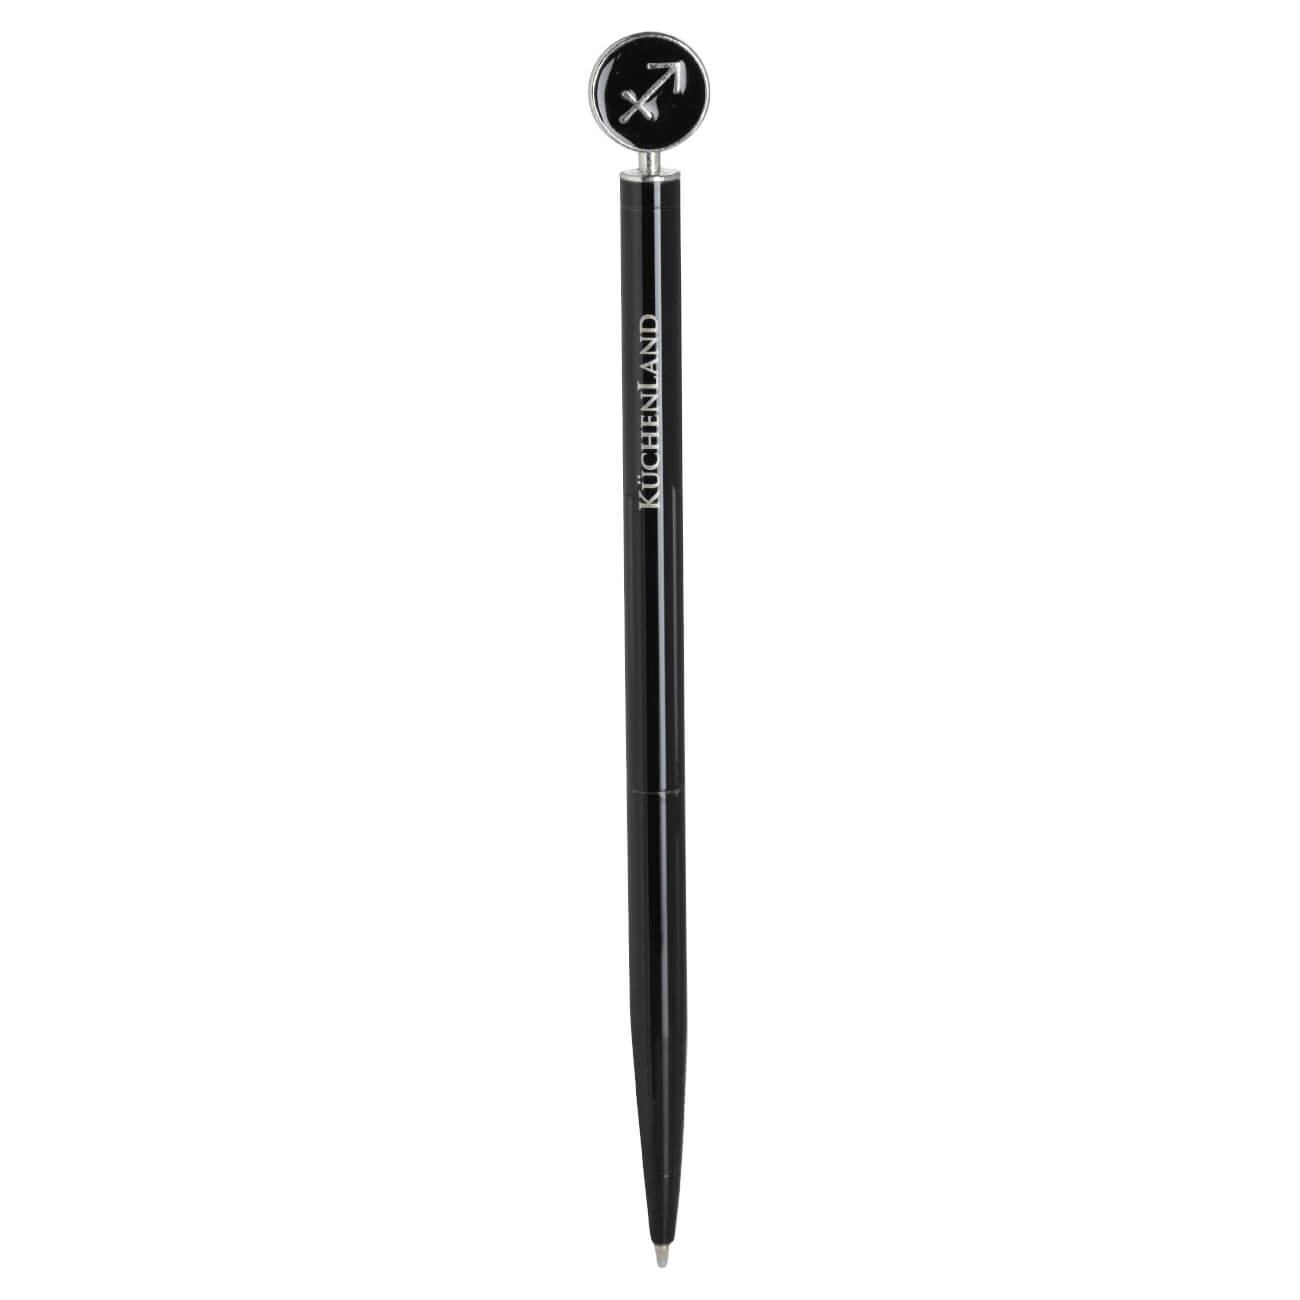 Ручка шариковая, 15 см, с фигуркой, сталь, черно-серебристая, Стрелец, Zodiac ручка шариковая 15 см с фигуркой сталь черно серебристая рак zodiac